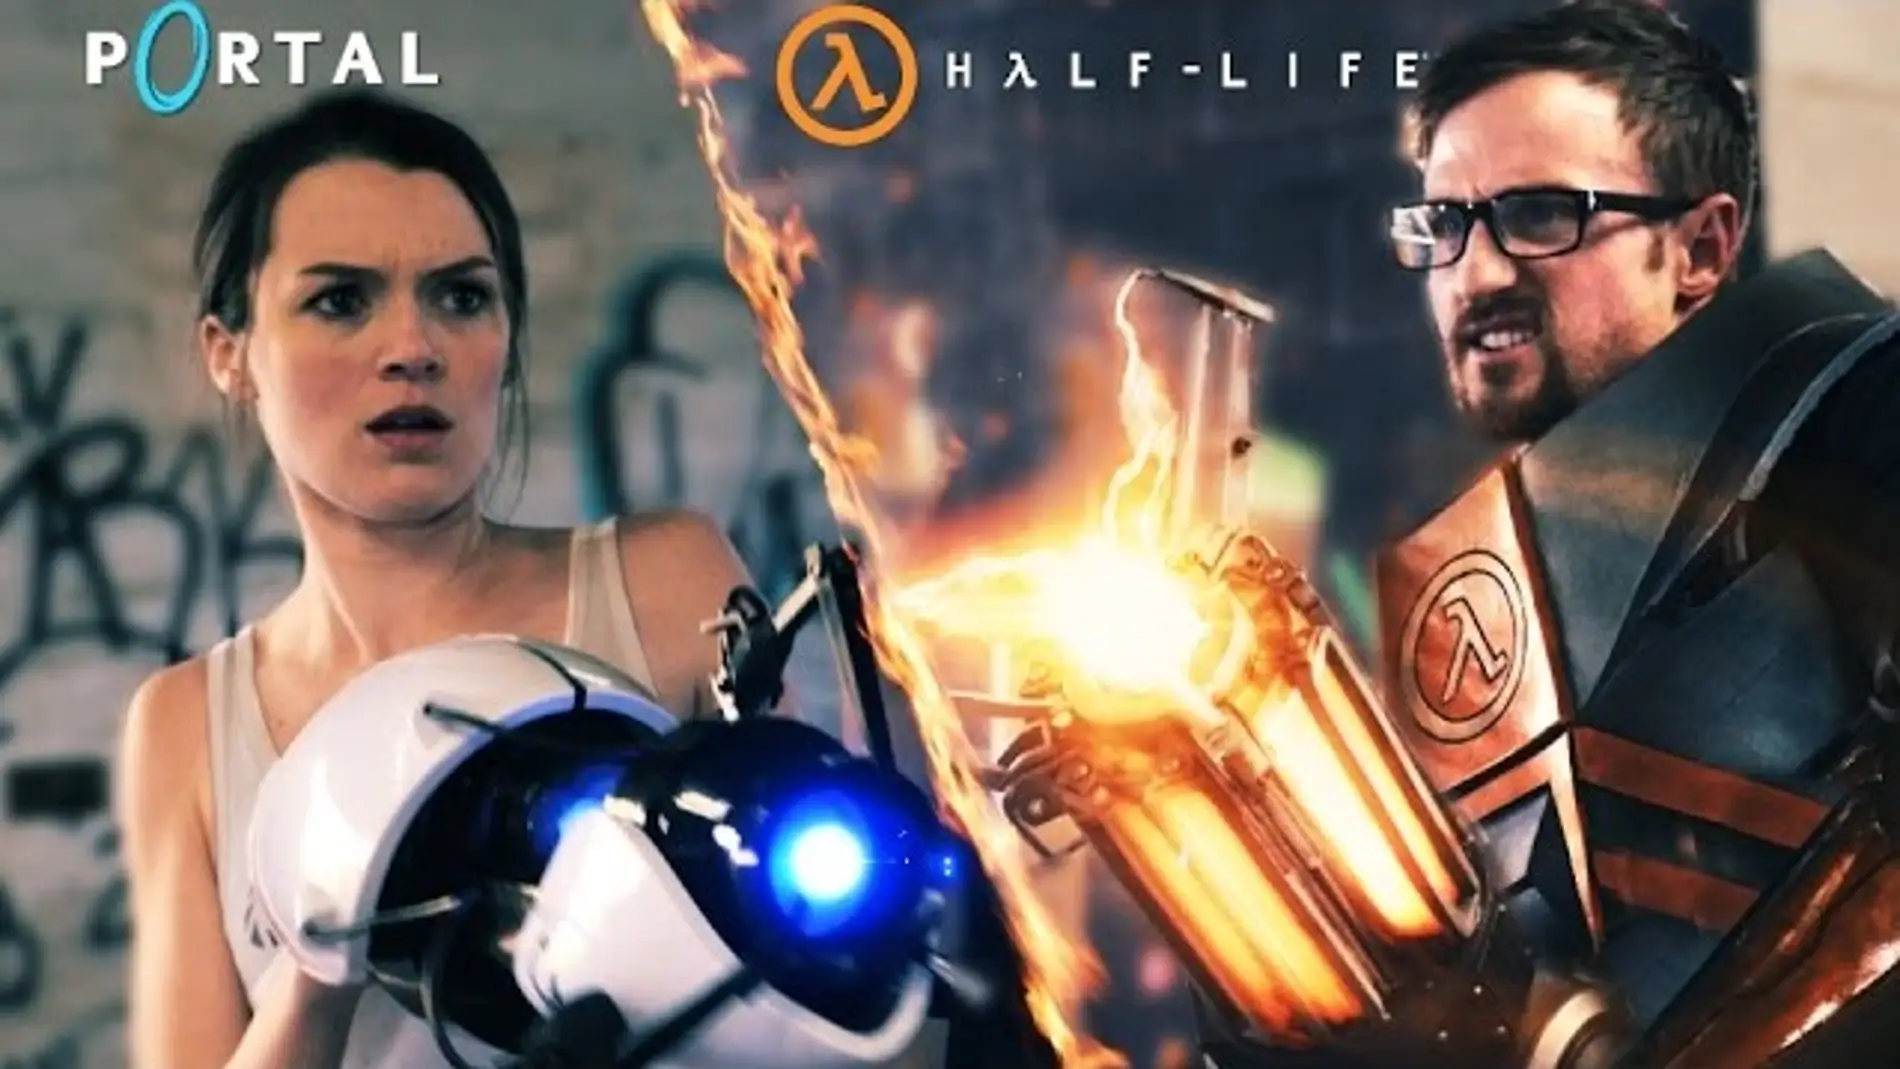 Half Life vs. Portal